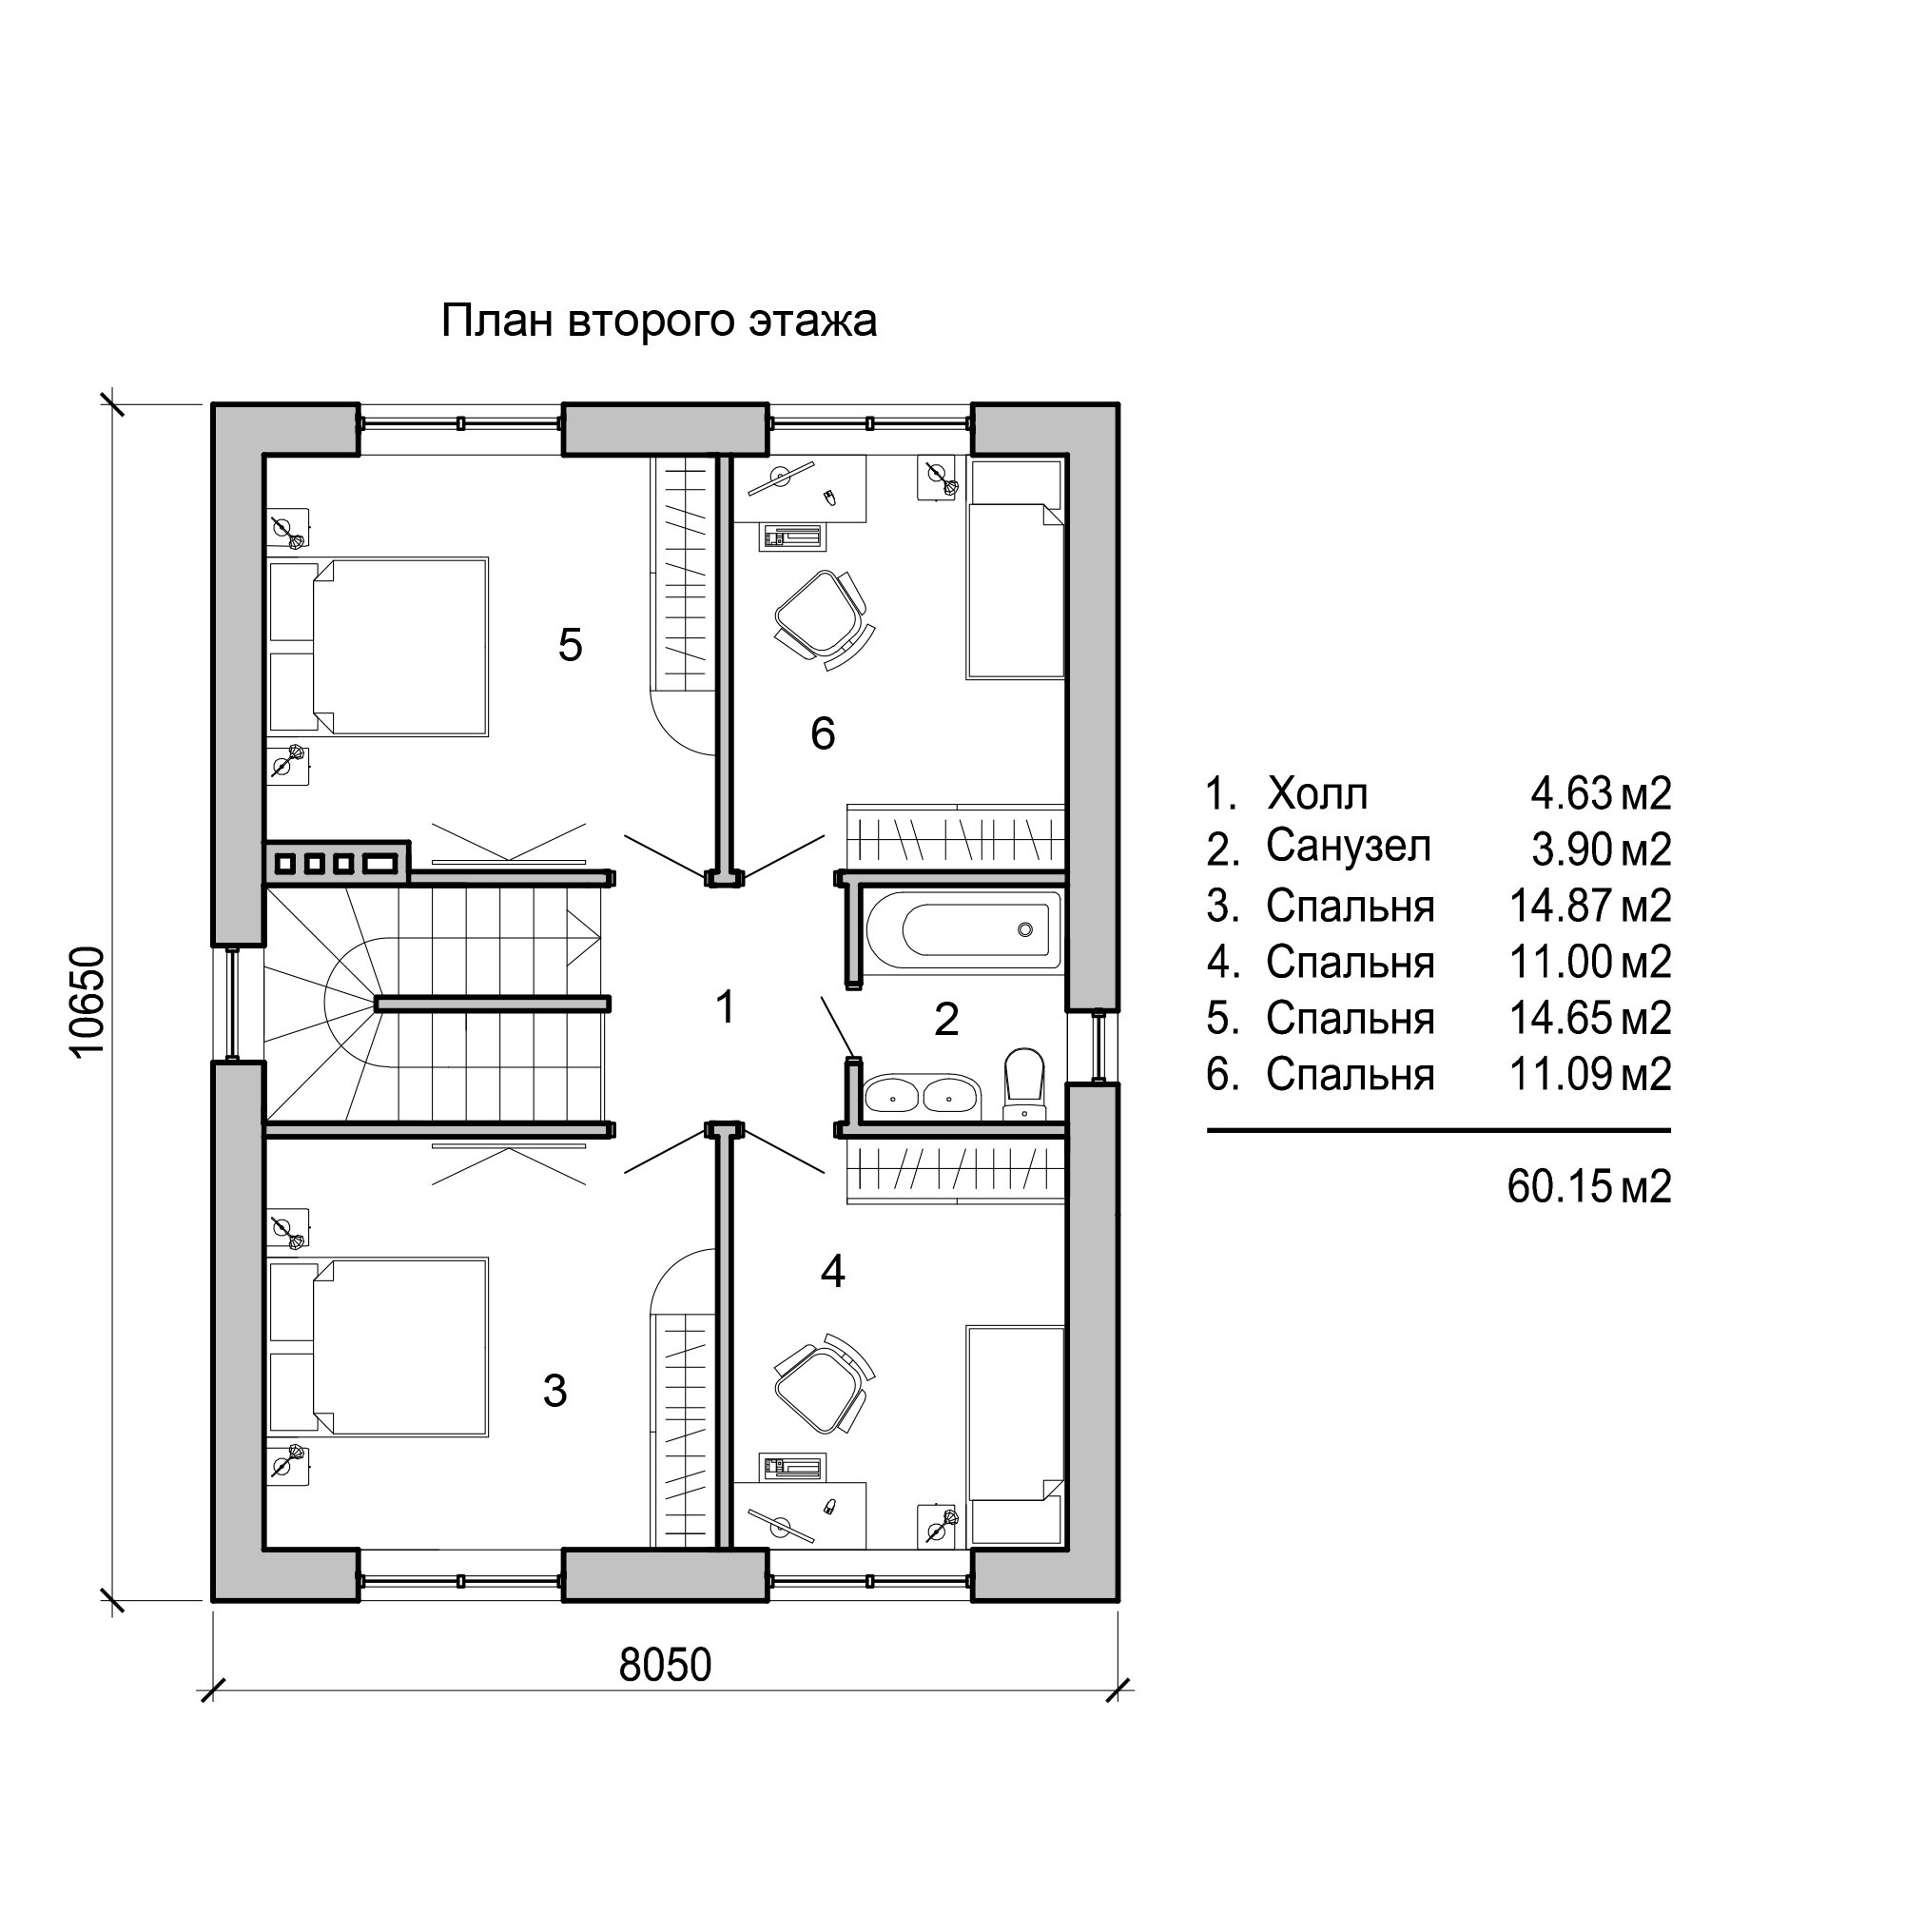 Дом 4 комнаты 2 этажа. Z500 zx12 планировка. Планировки домов двухэтажных. Планировка второго этажа с двумя спальнями. Чертеж двухэтажного дома.